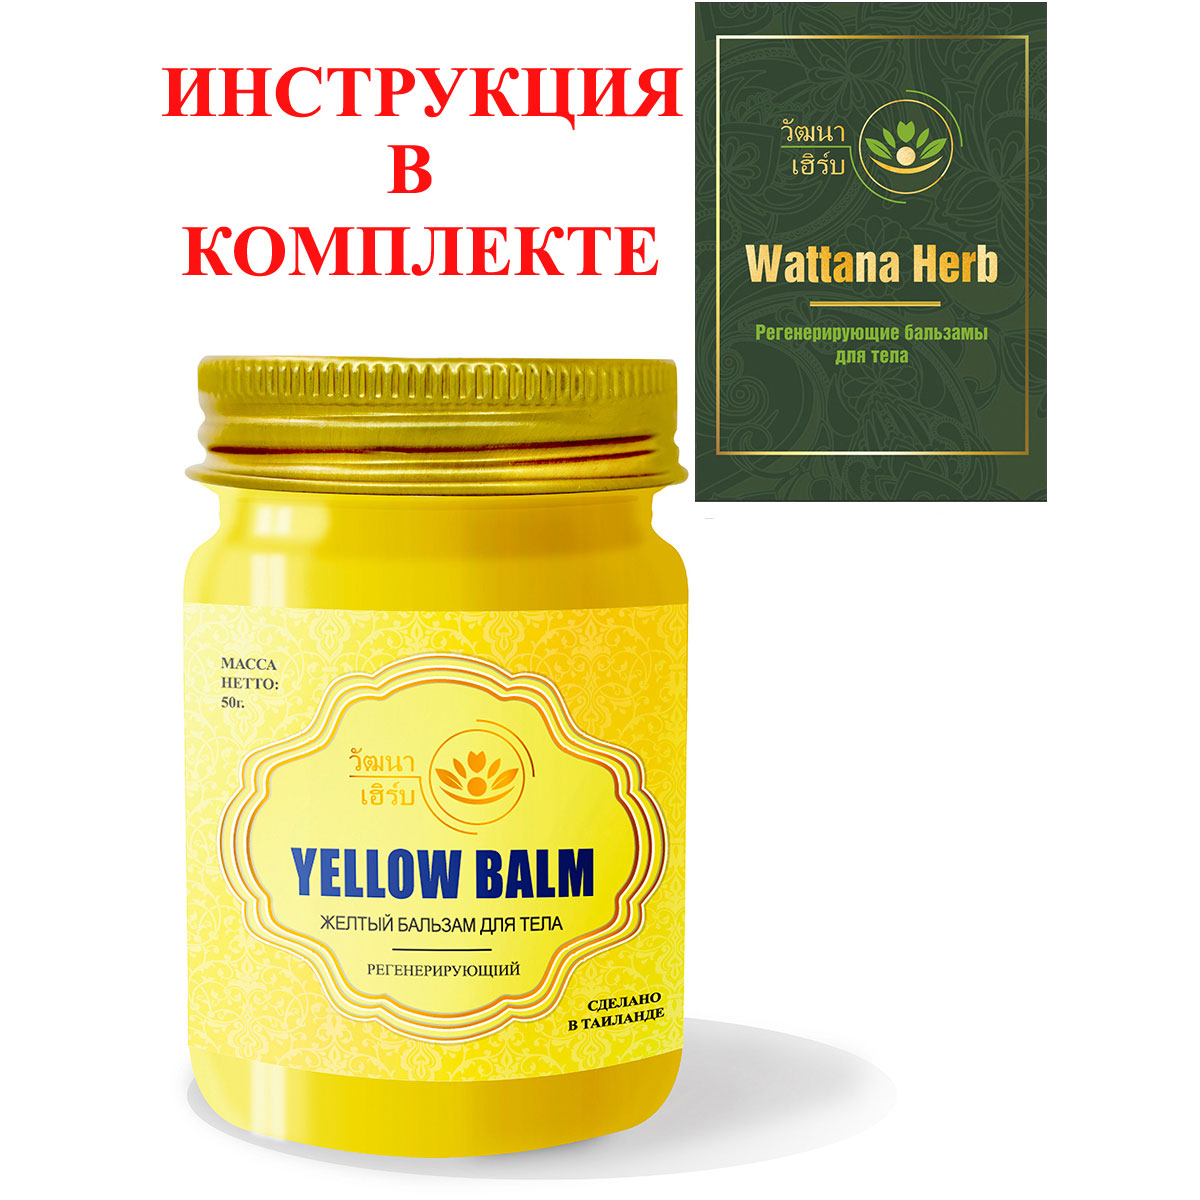 Тайский натуральный Желтый бальзам для тела регенерирующий Wattana Herb Yellow Balm 50гр.